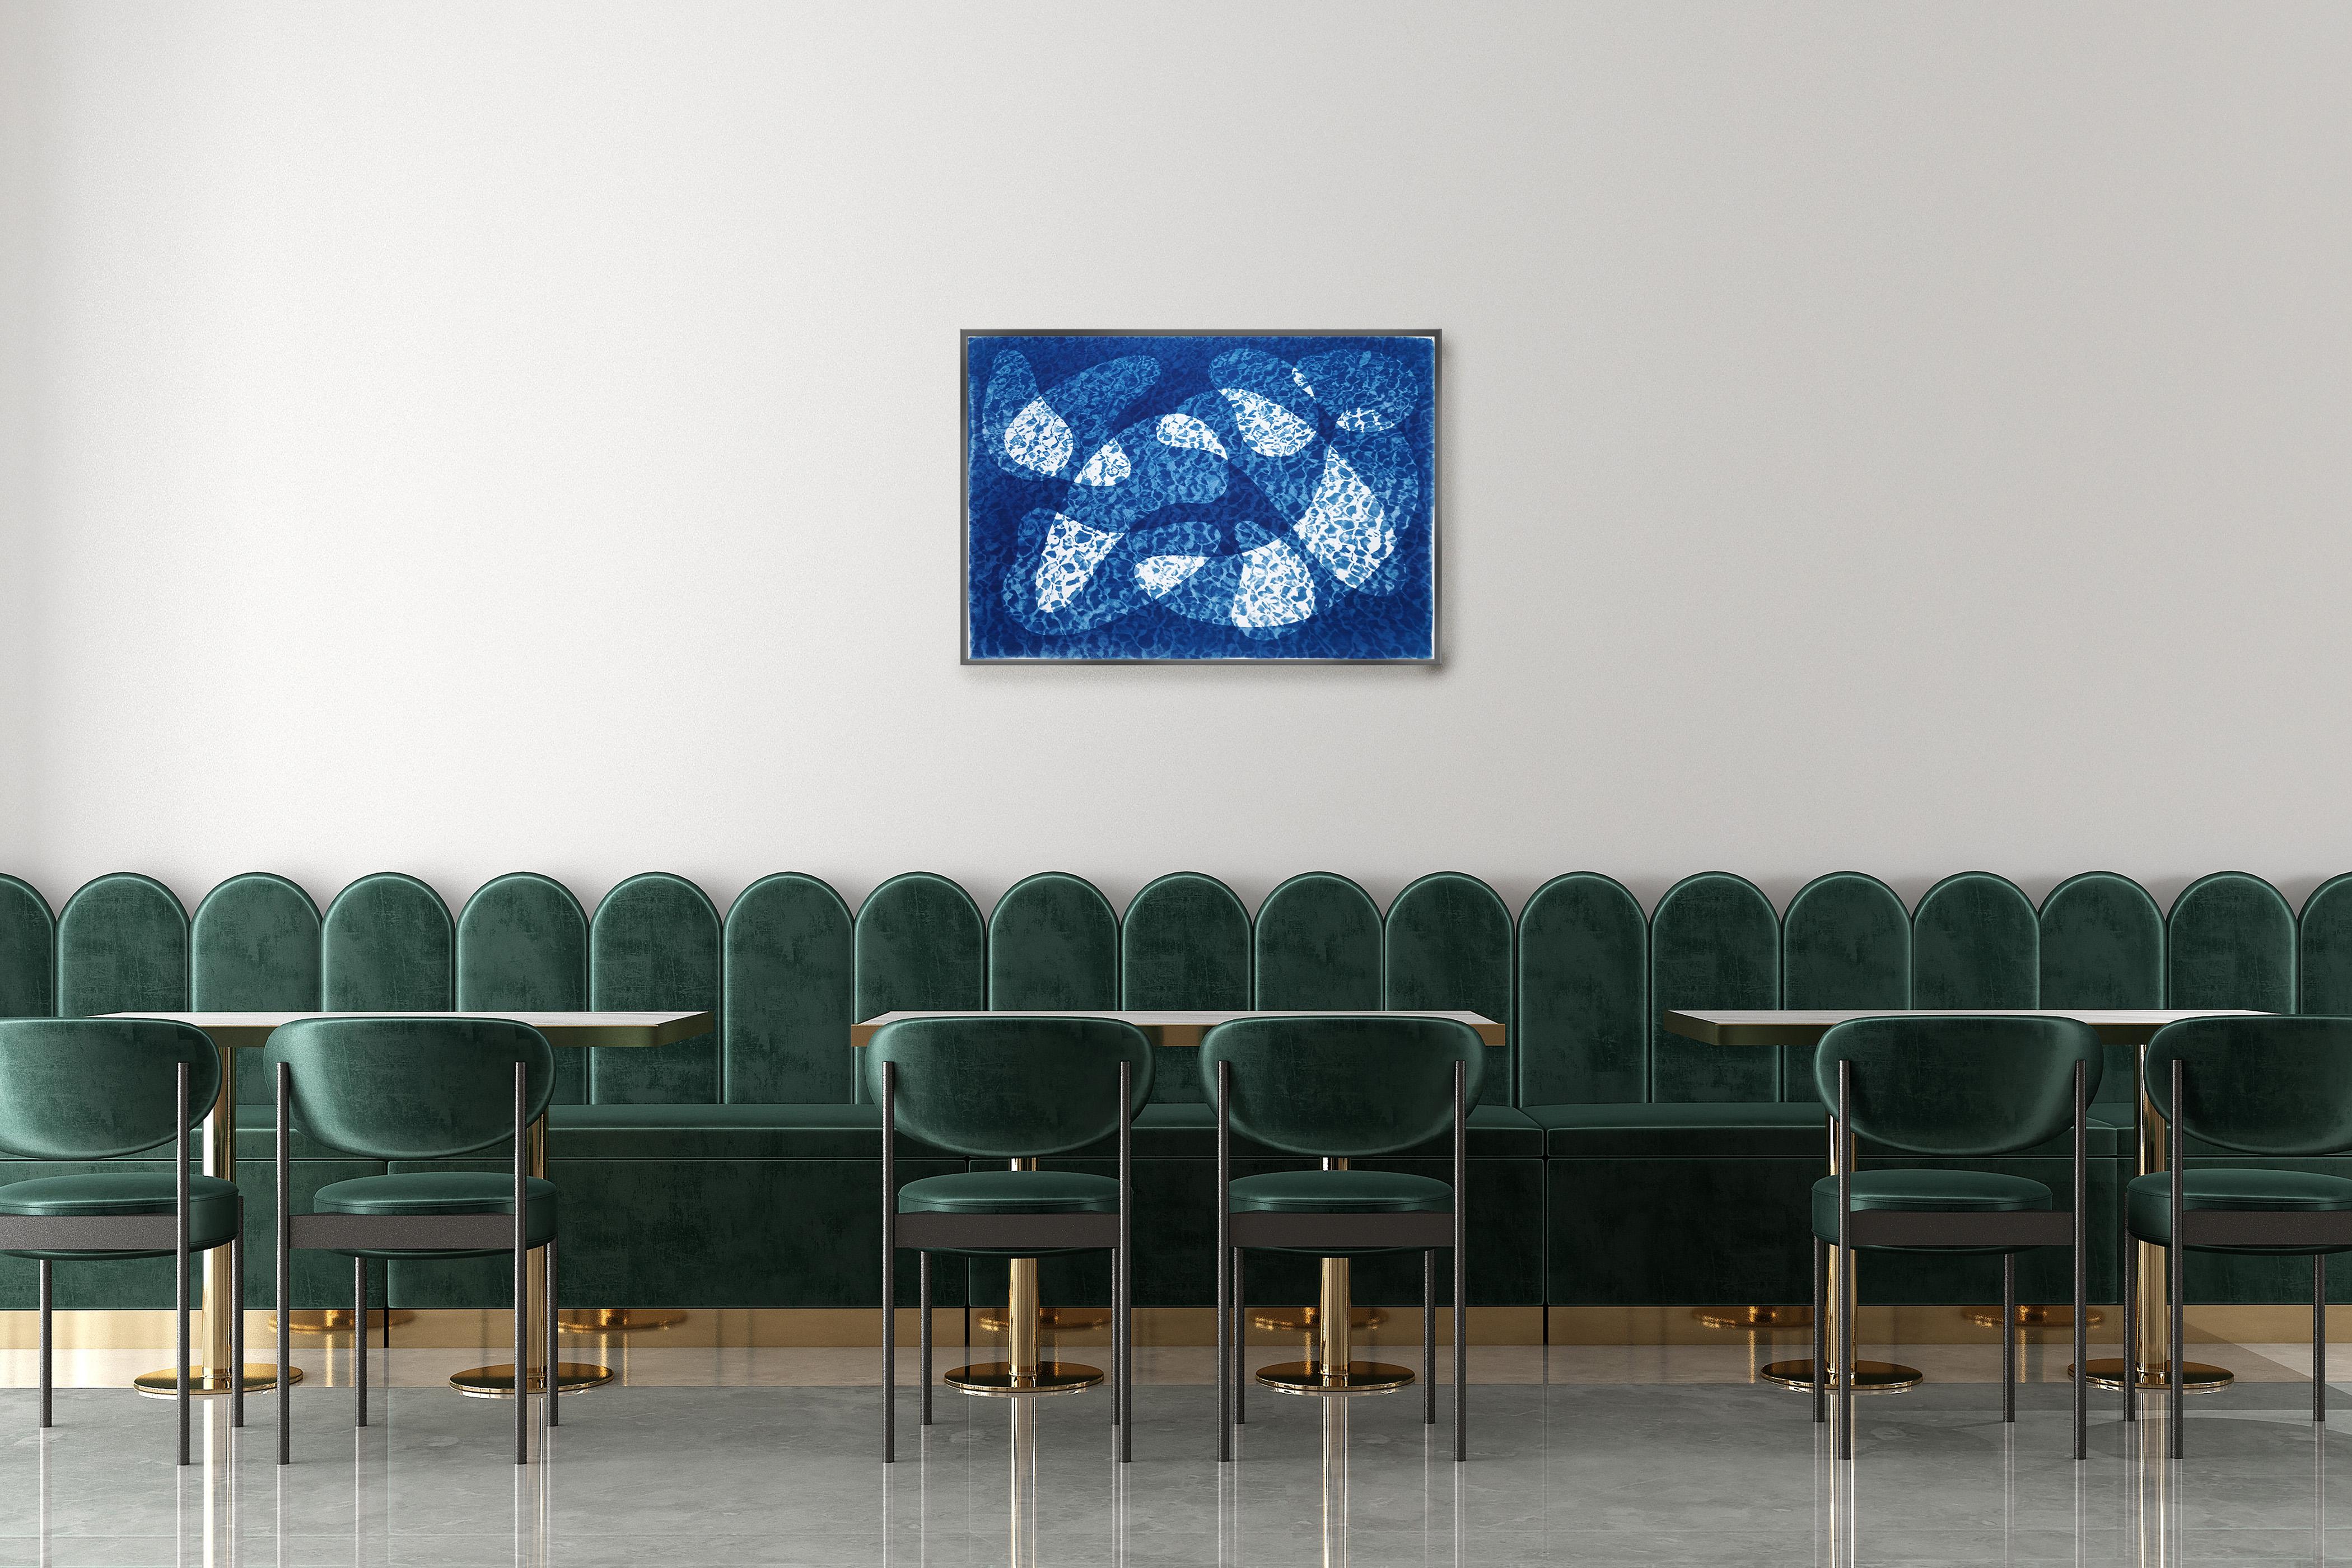 Reflection de l'eau de poissons sous l'eau, monotype de cyanotype de piscine dans les tons bleus - Impressionnisme abstrait Print par Kind of Cyan